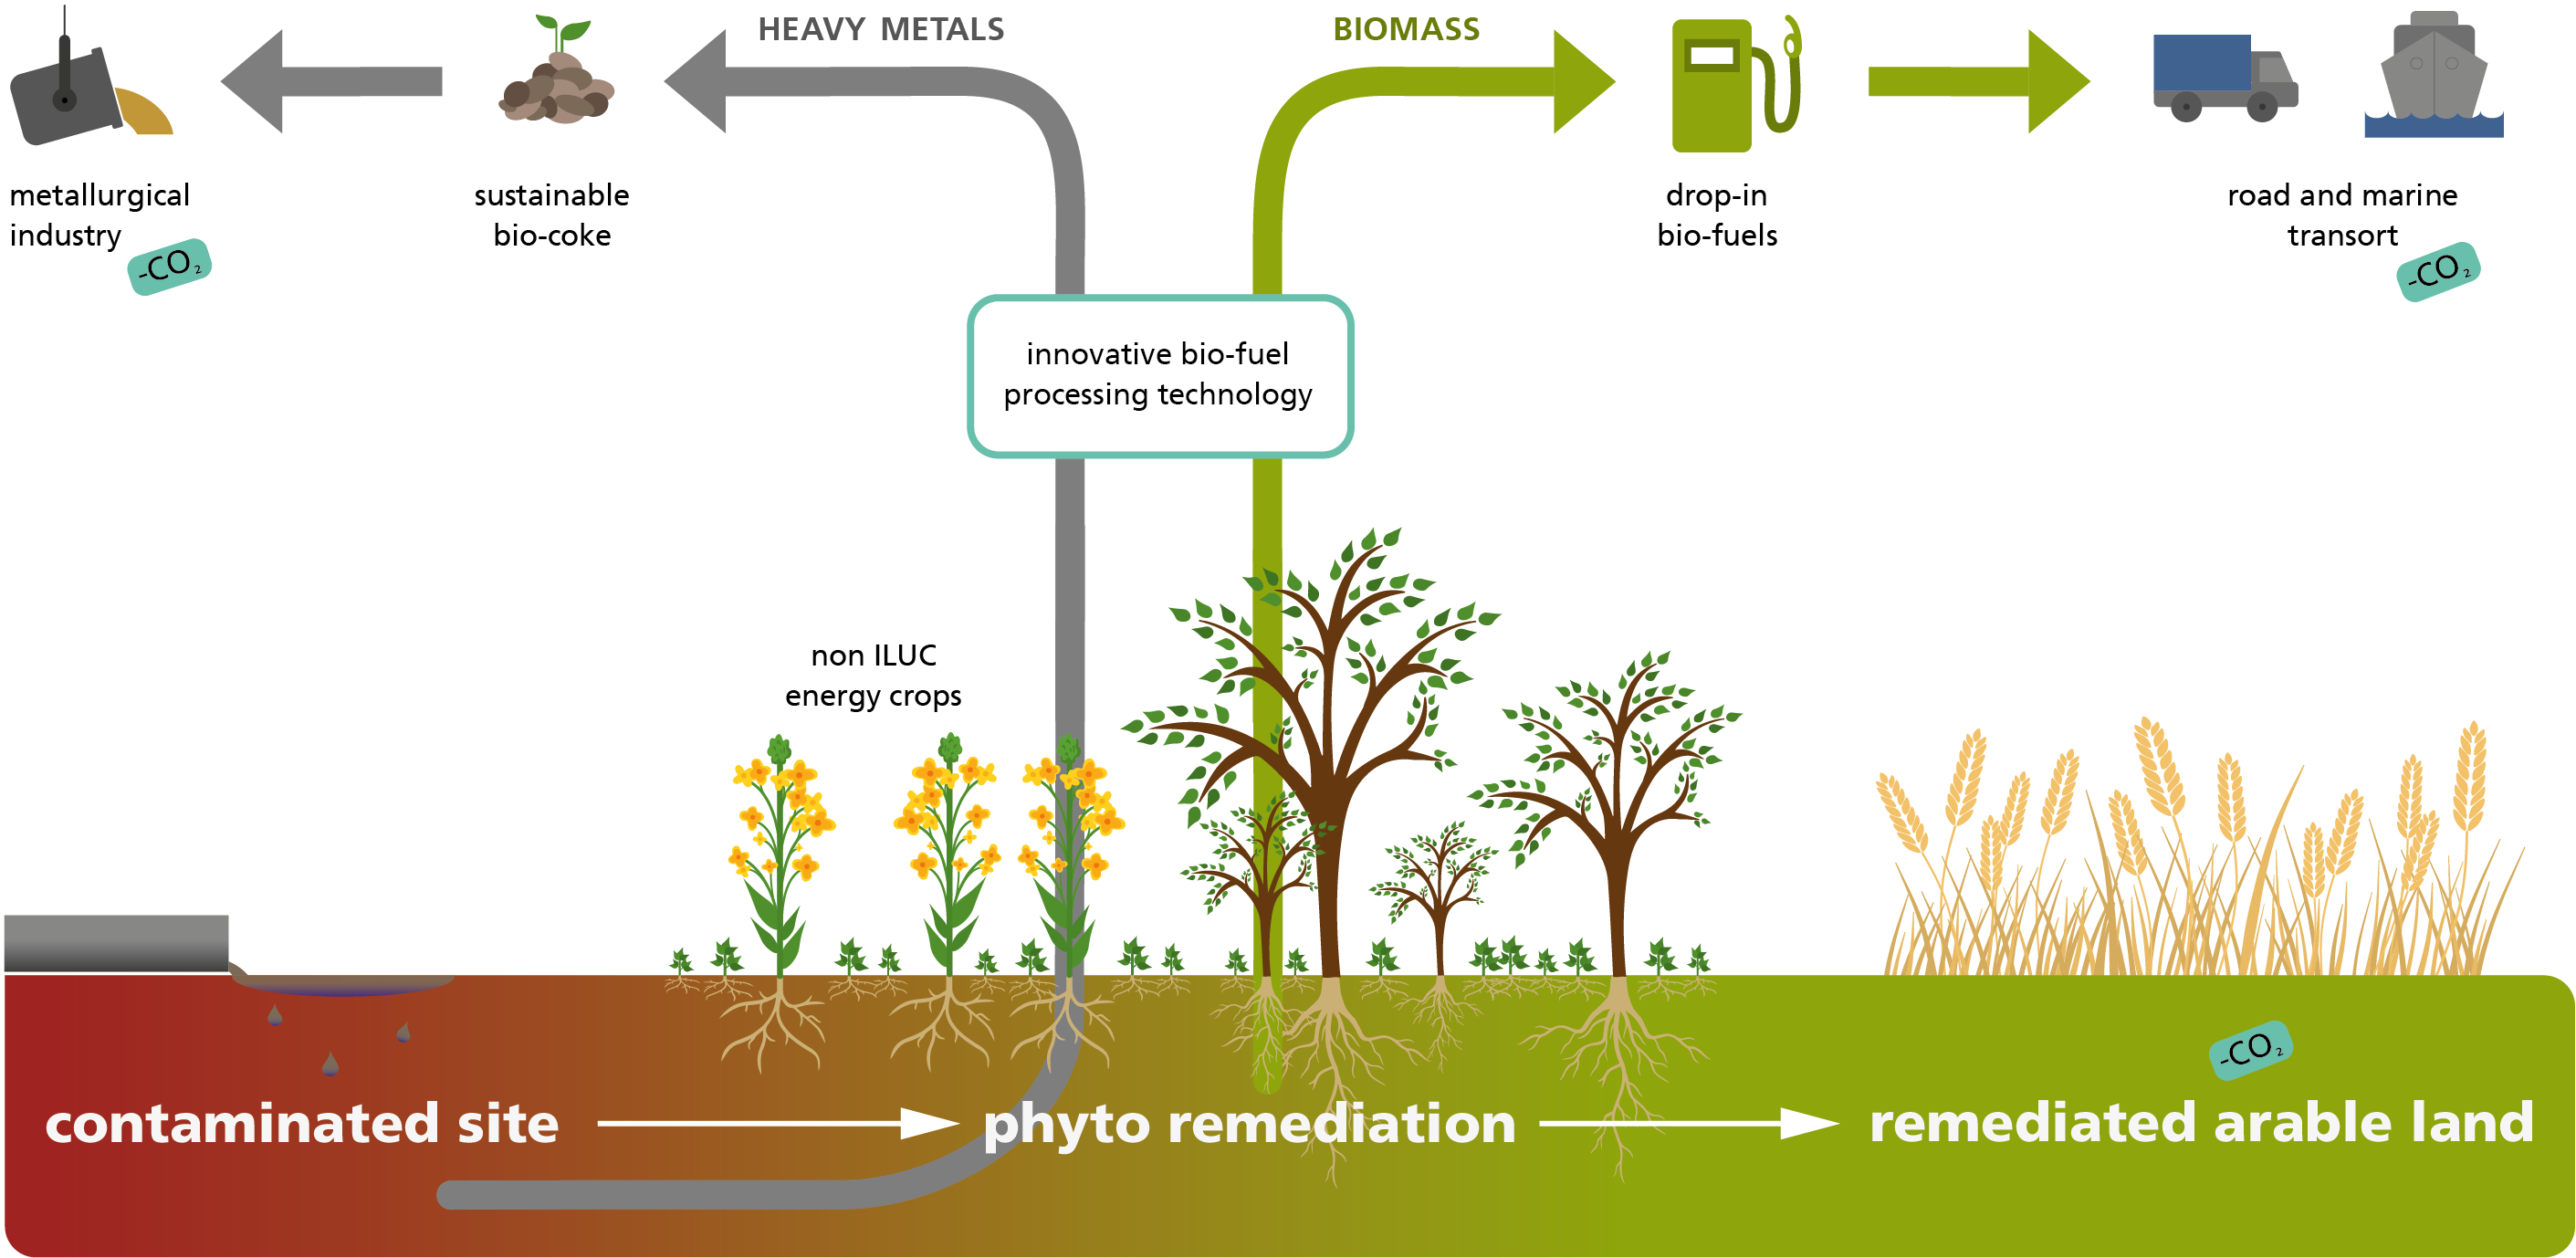 Phytosanierung kontaminierter Flächen bei gleichzeitiger Produktion von synthetischem Biokraftstoff und Biokoks für Industrieprozesse